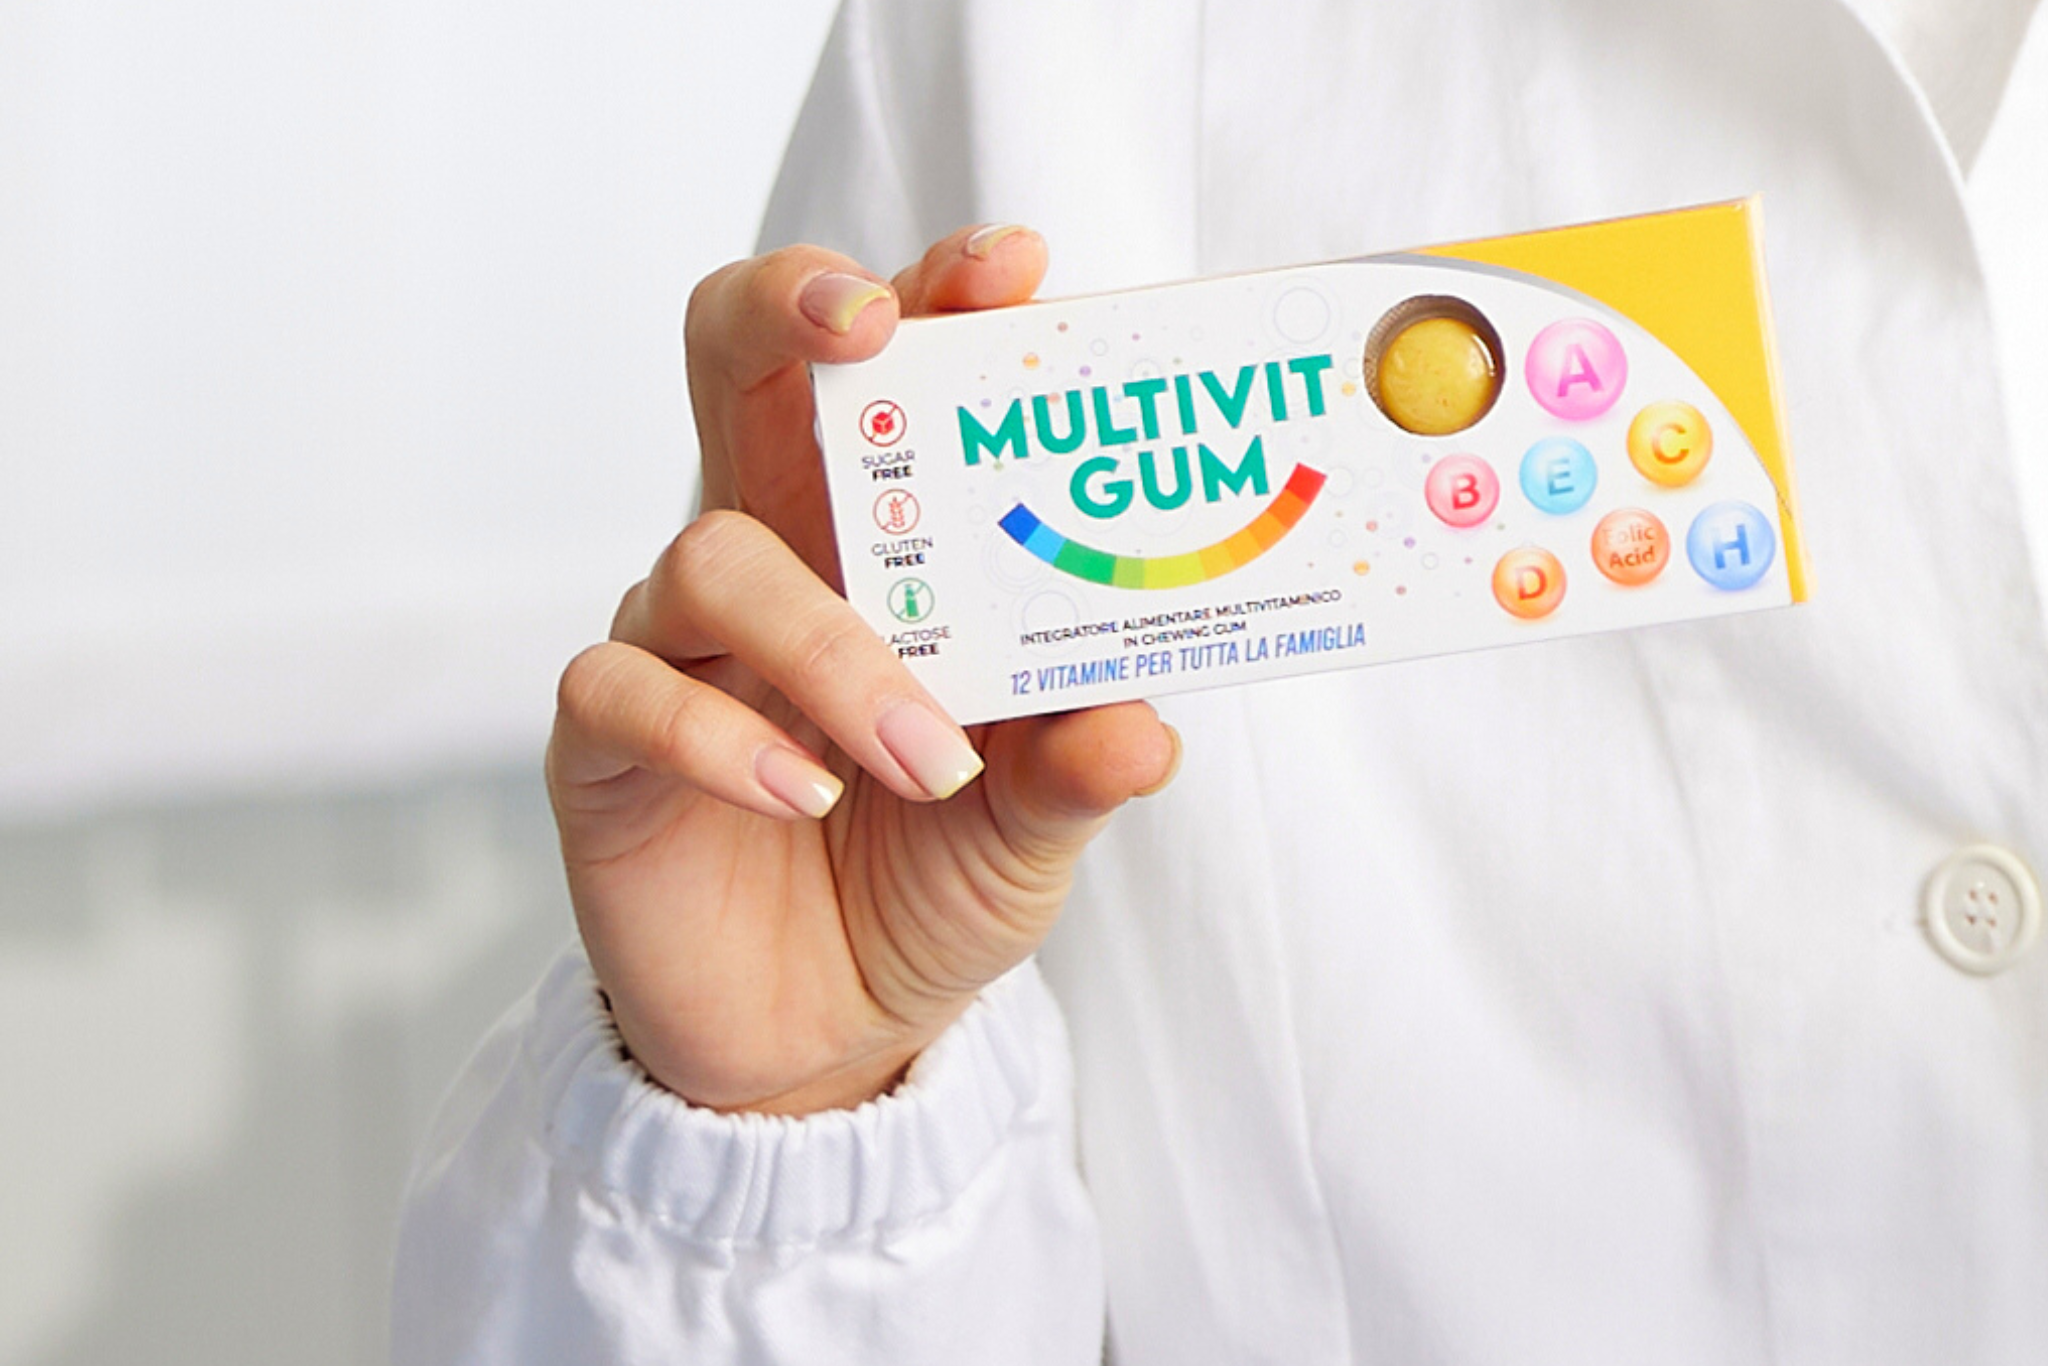 Immagine illustrativa che rappresenta un momento quotidiano di consumo delle Multivit Gum, sottolineando la facilità di assunzione e i benefici immediati come l'aumento dei livelli di energia e il miglioramento del benessere generale